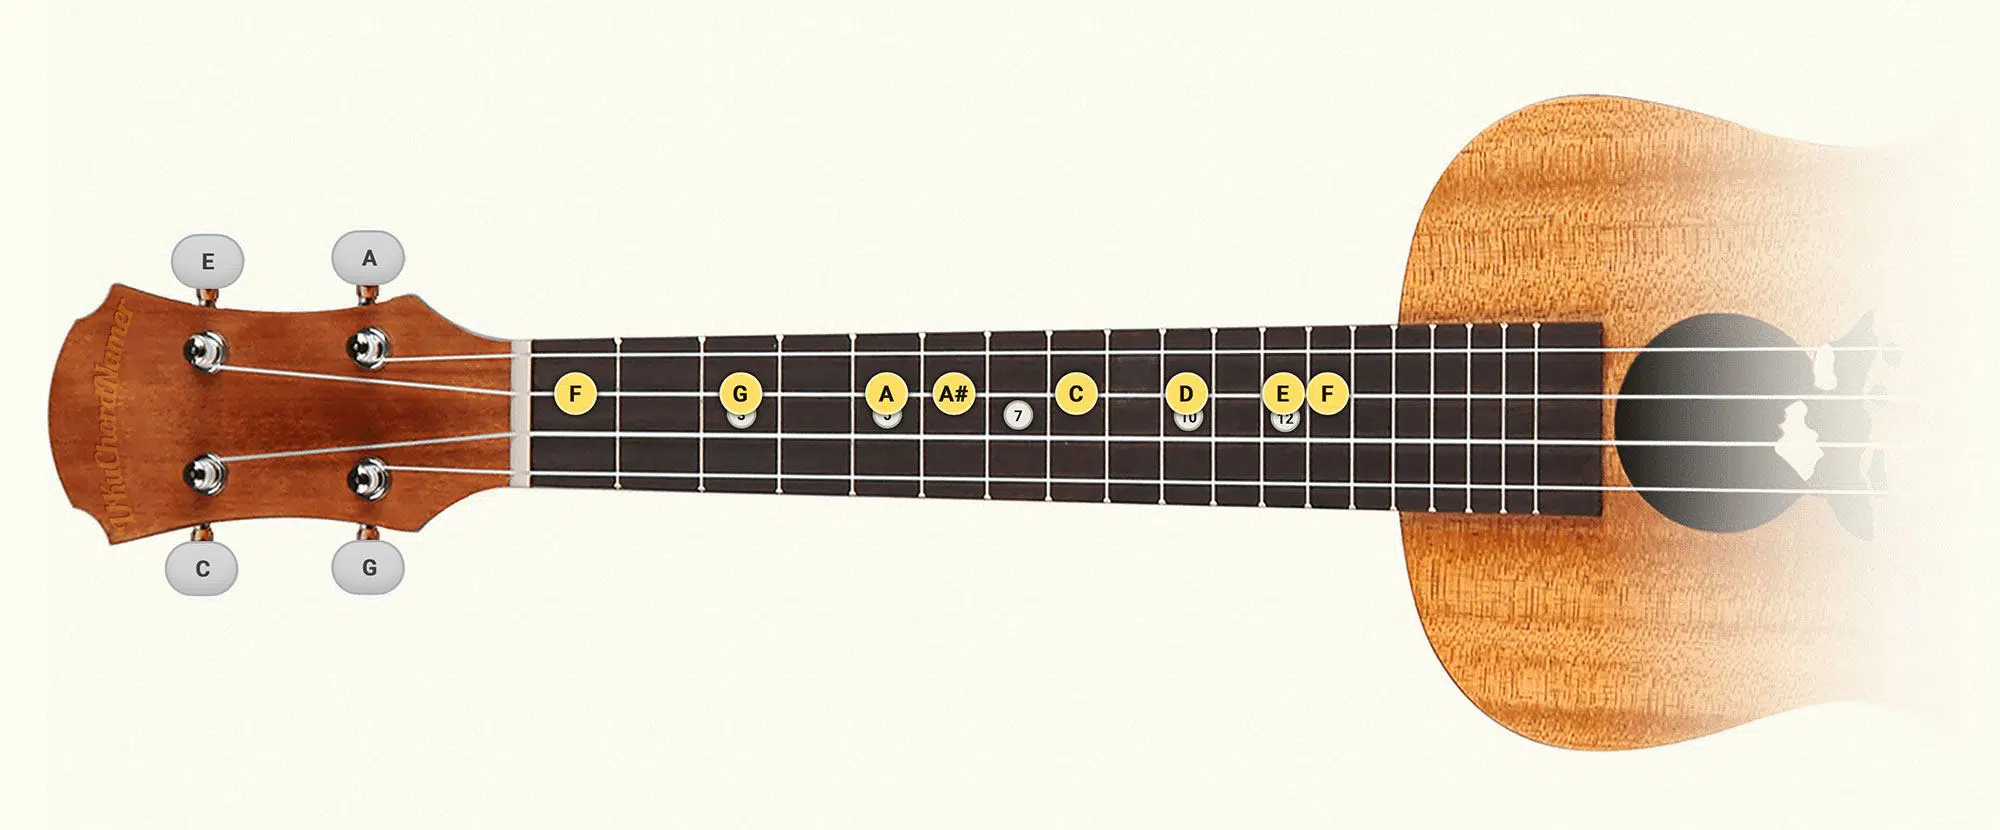 F major ukulele scale